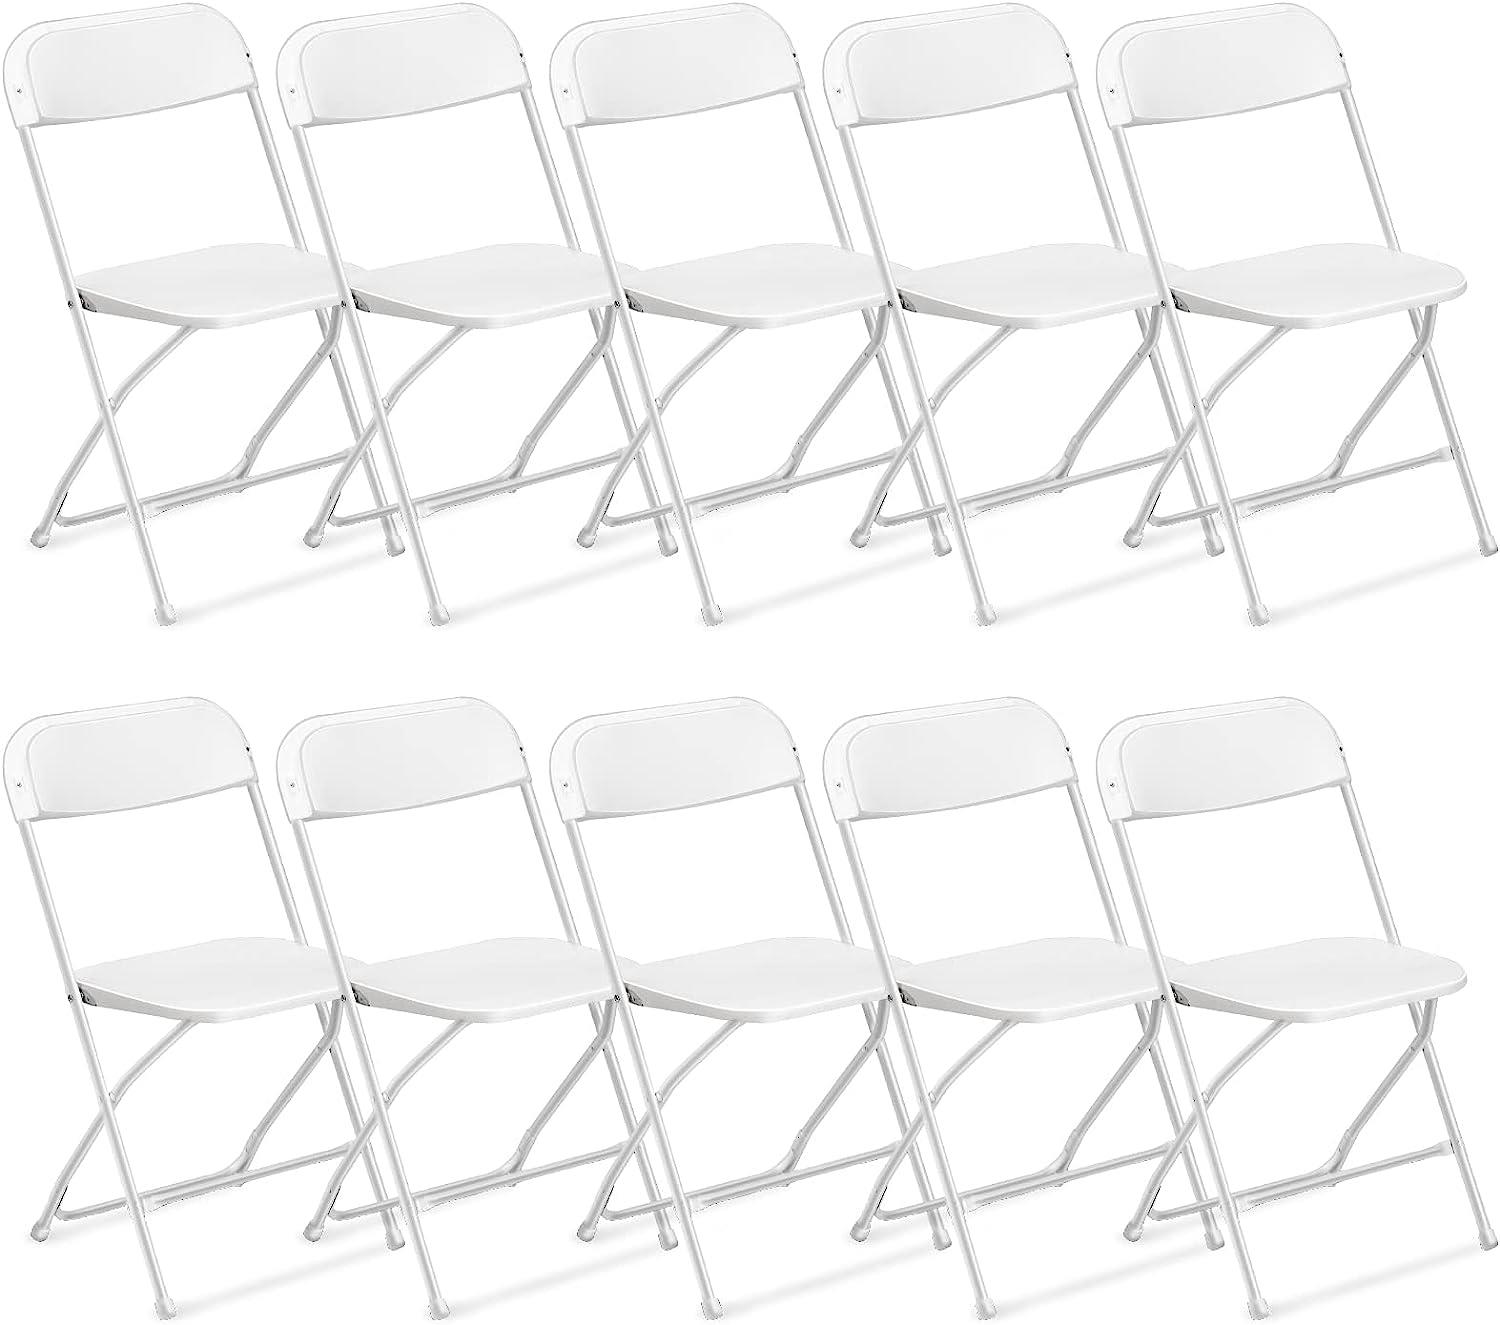 Ktaxon 10-Pcs Commercial Plastic Folding Chairs Deals